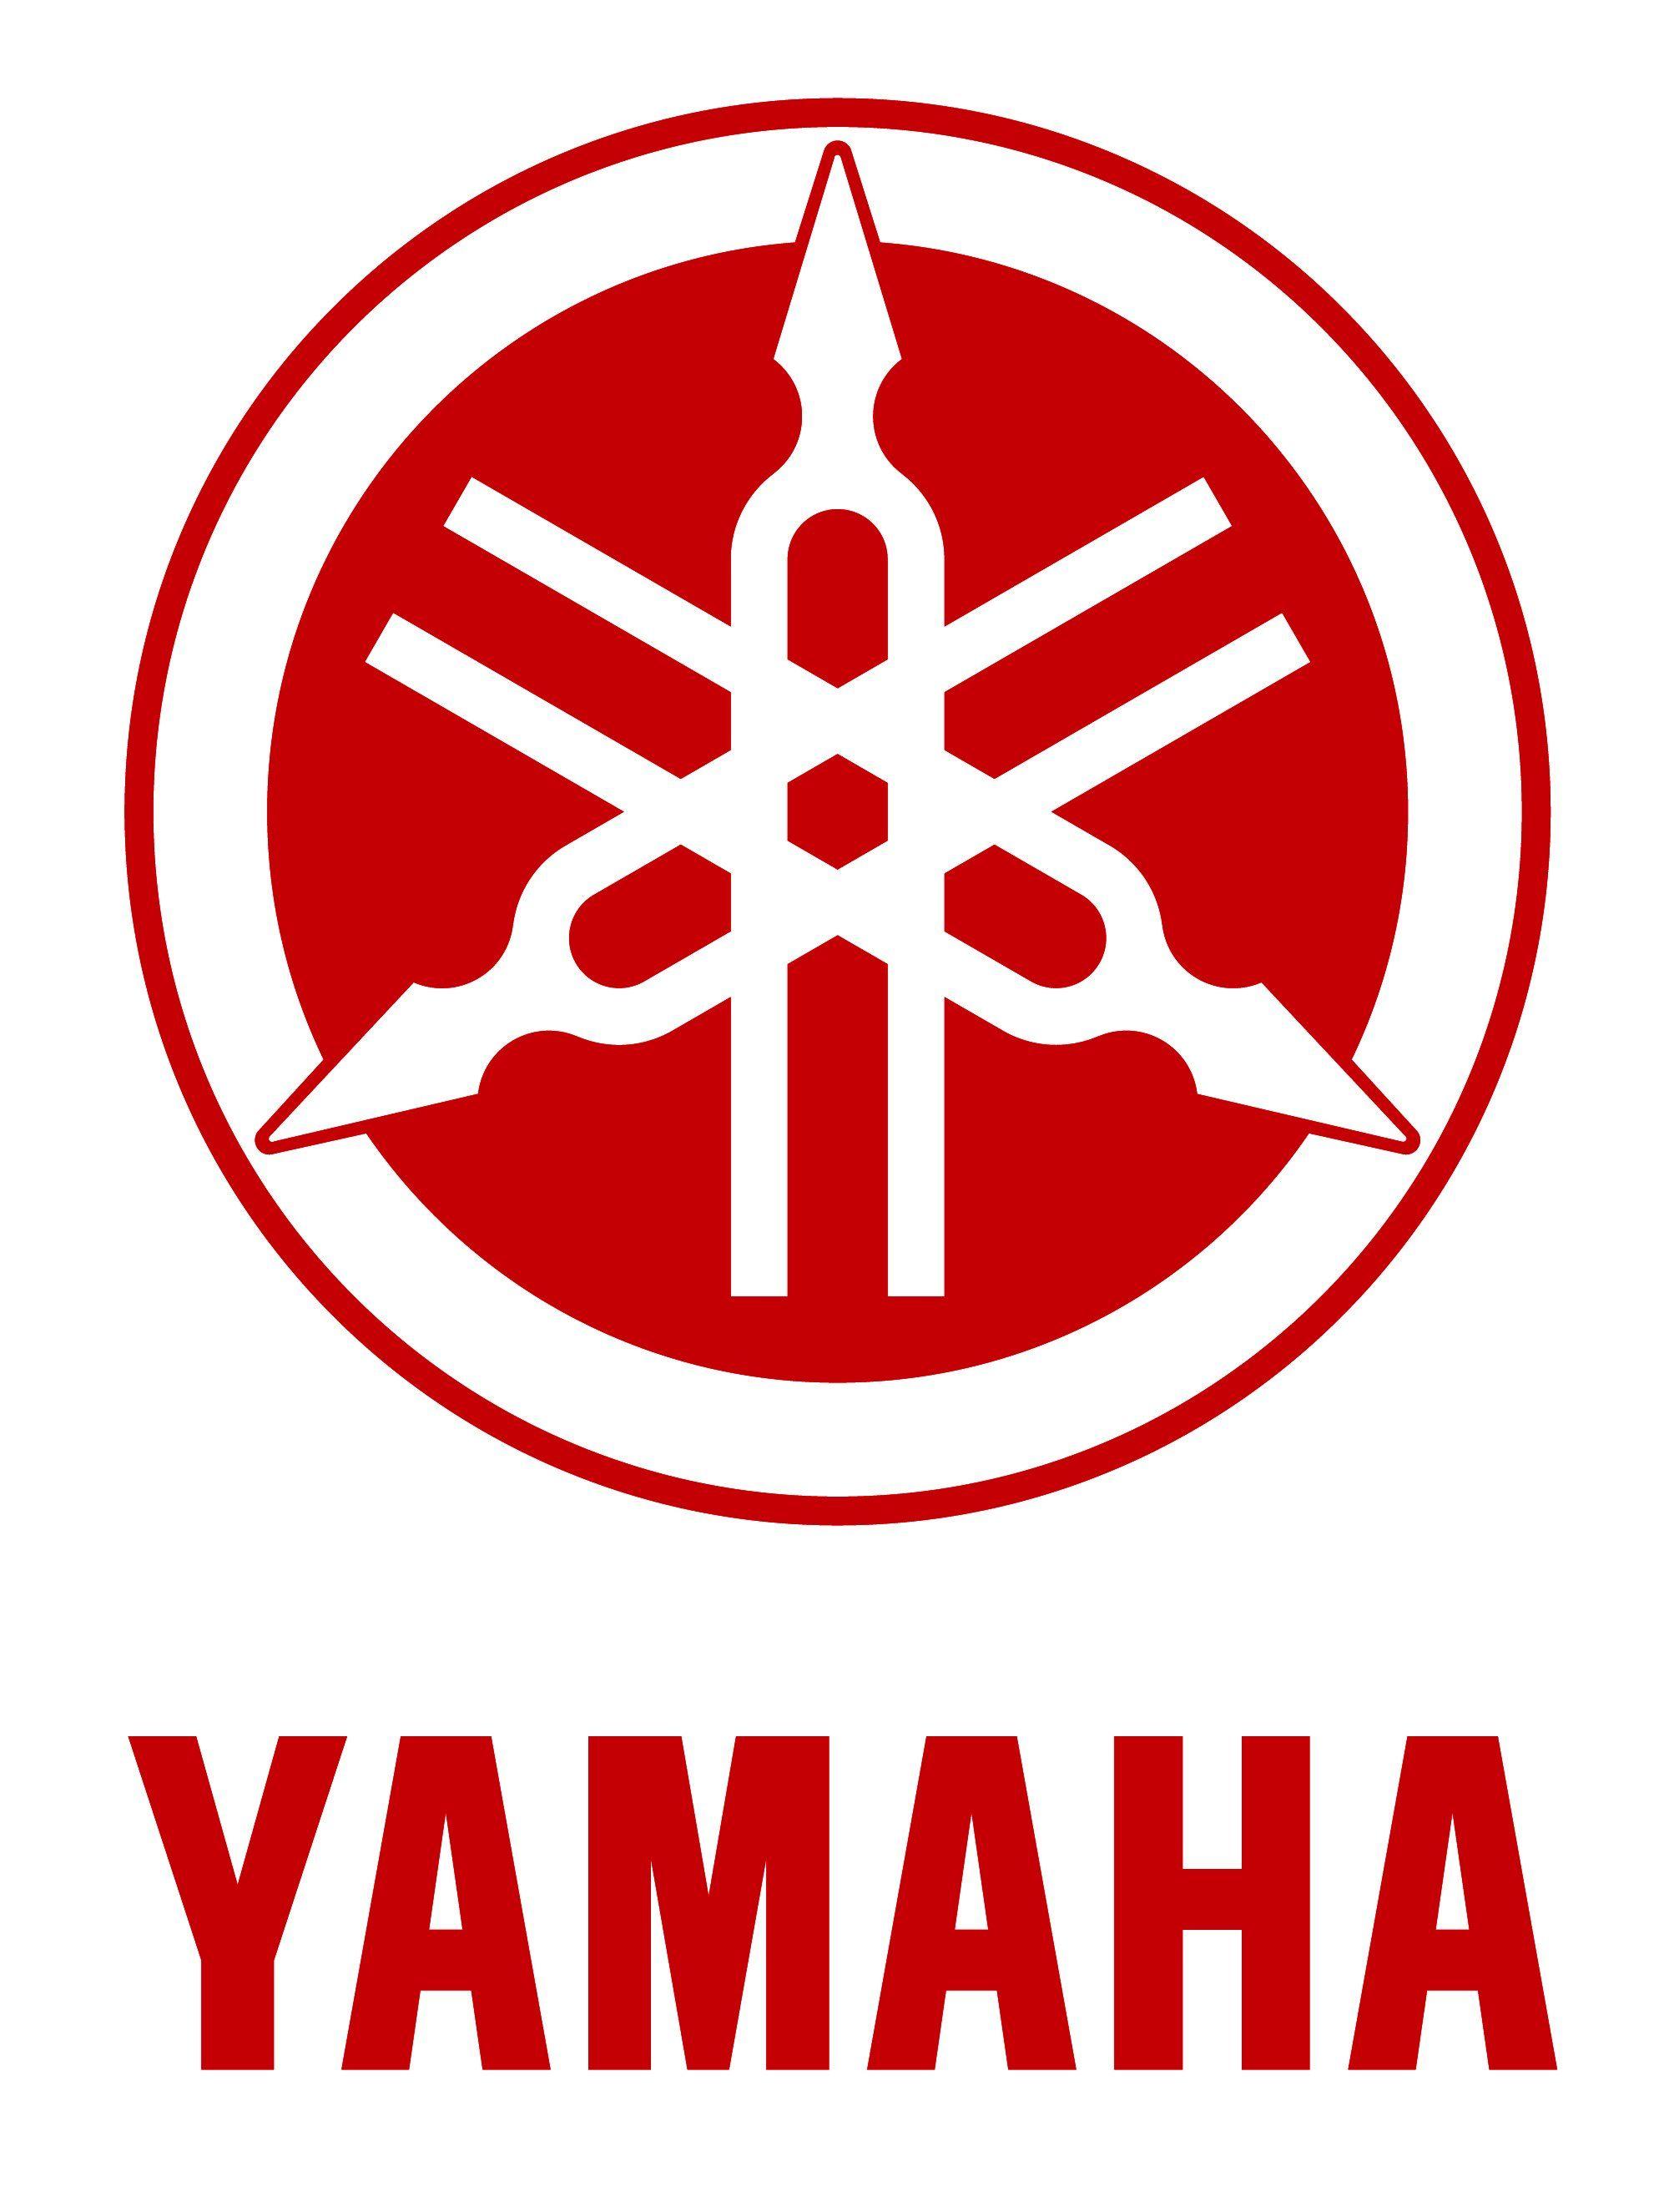 Yamaha Motorcycle Logo - Yamaha motorcycle Logos